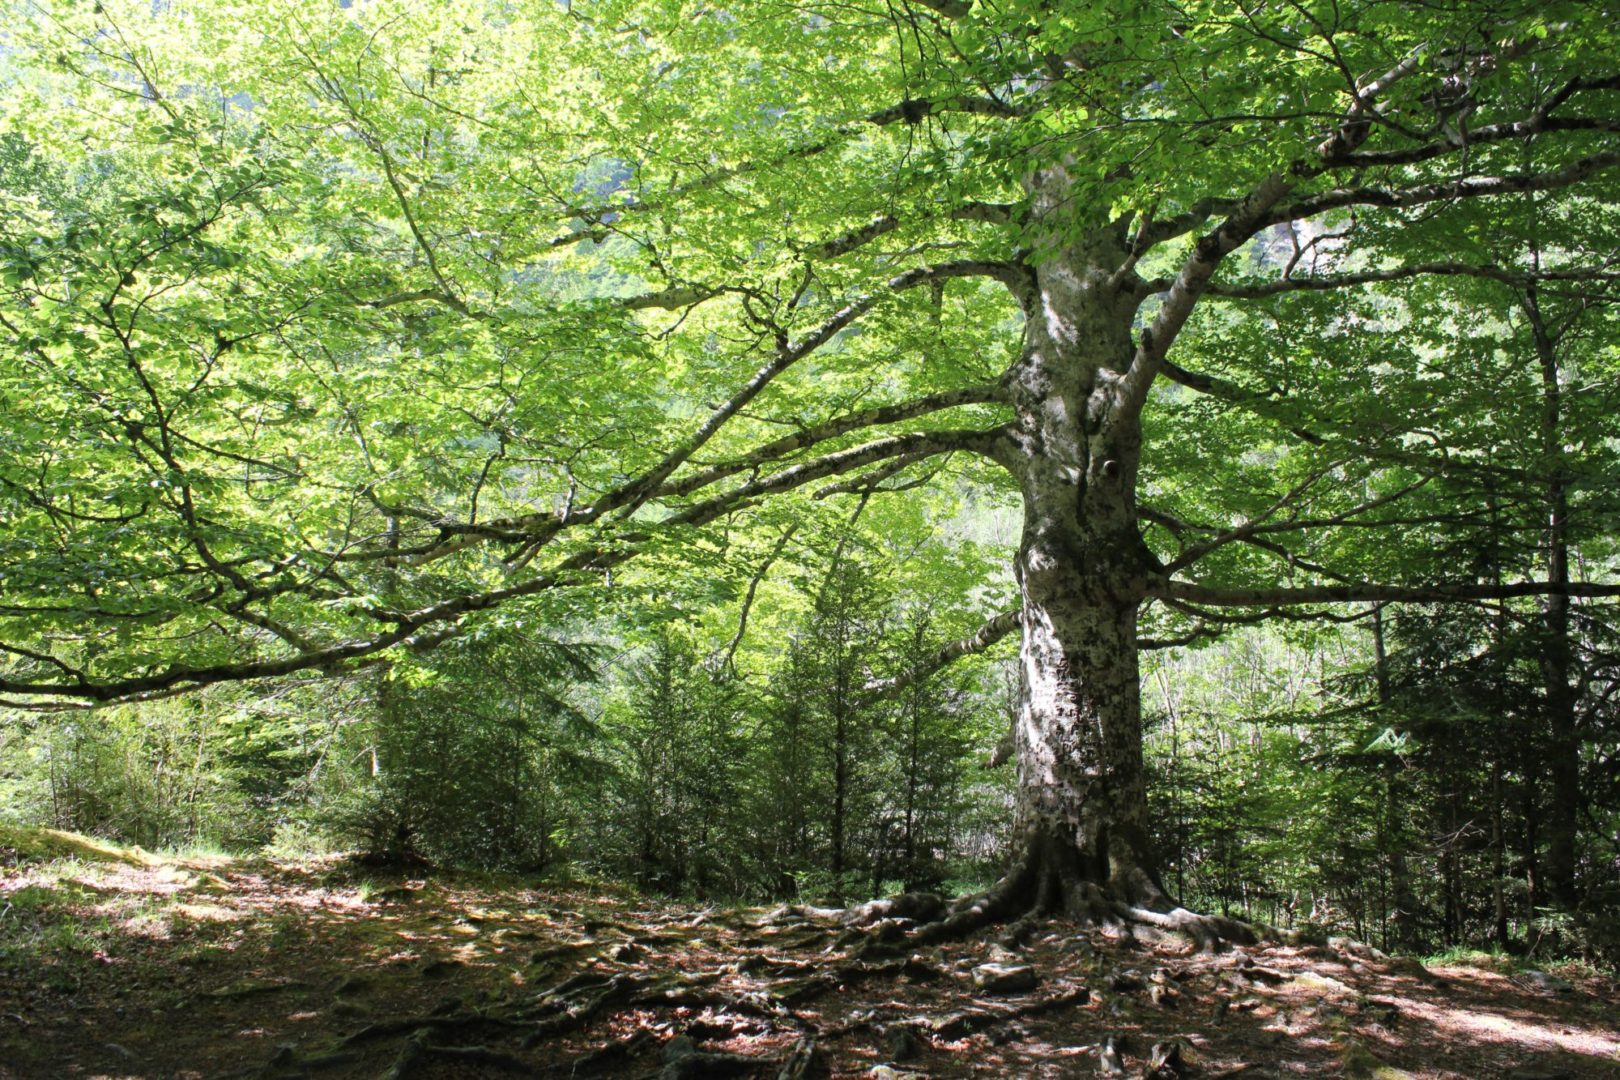 La importancia de los árboles para el planeta - Fundación Aquae